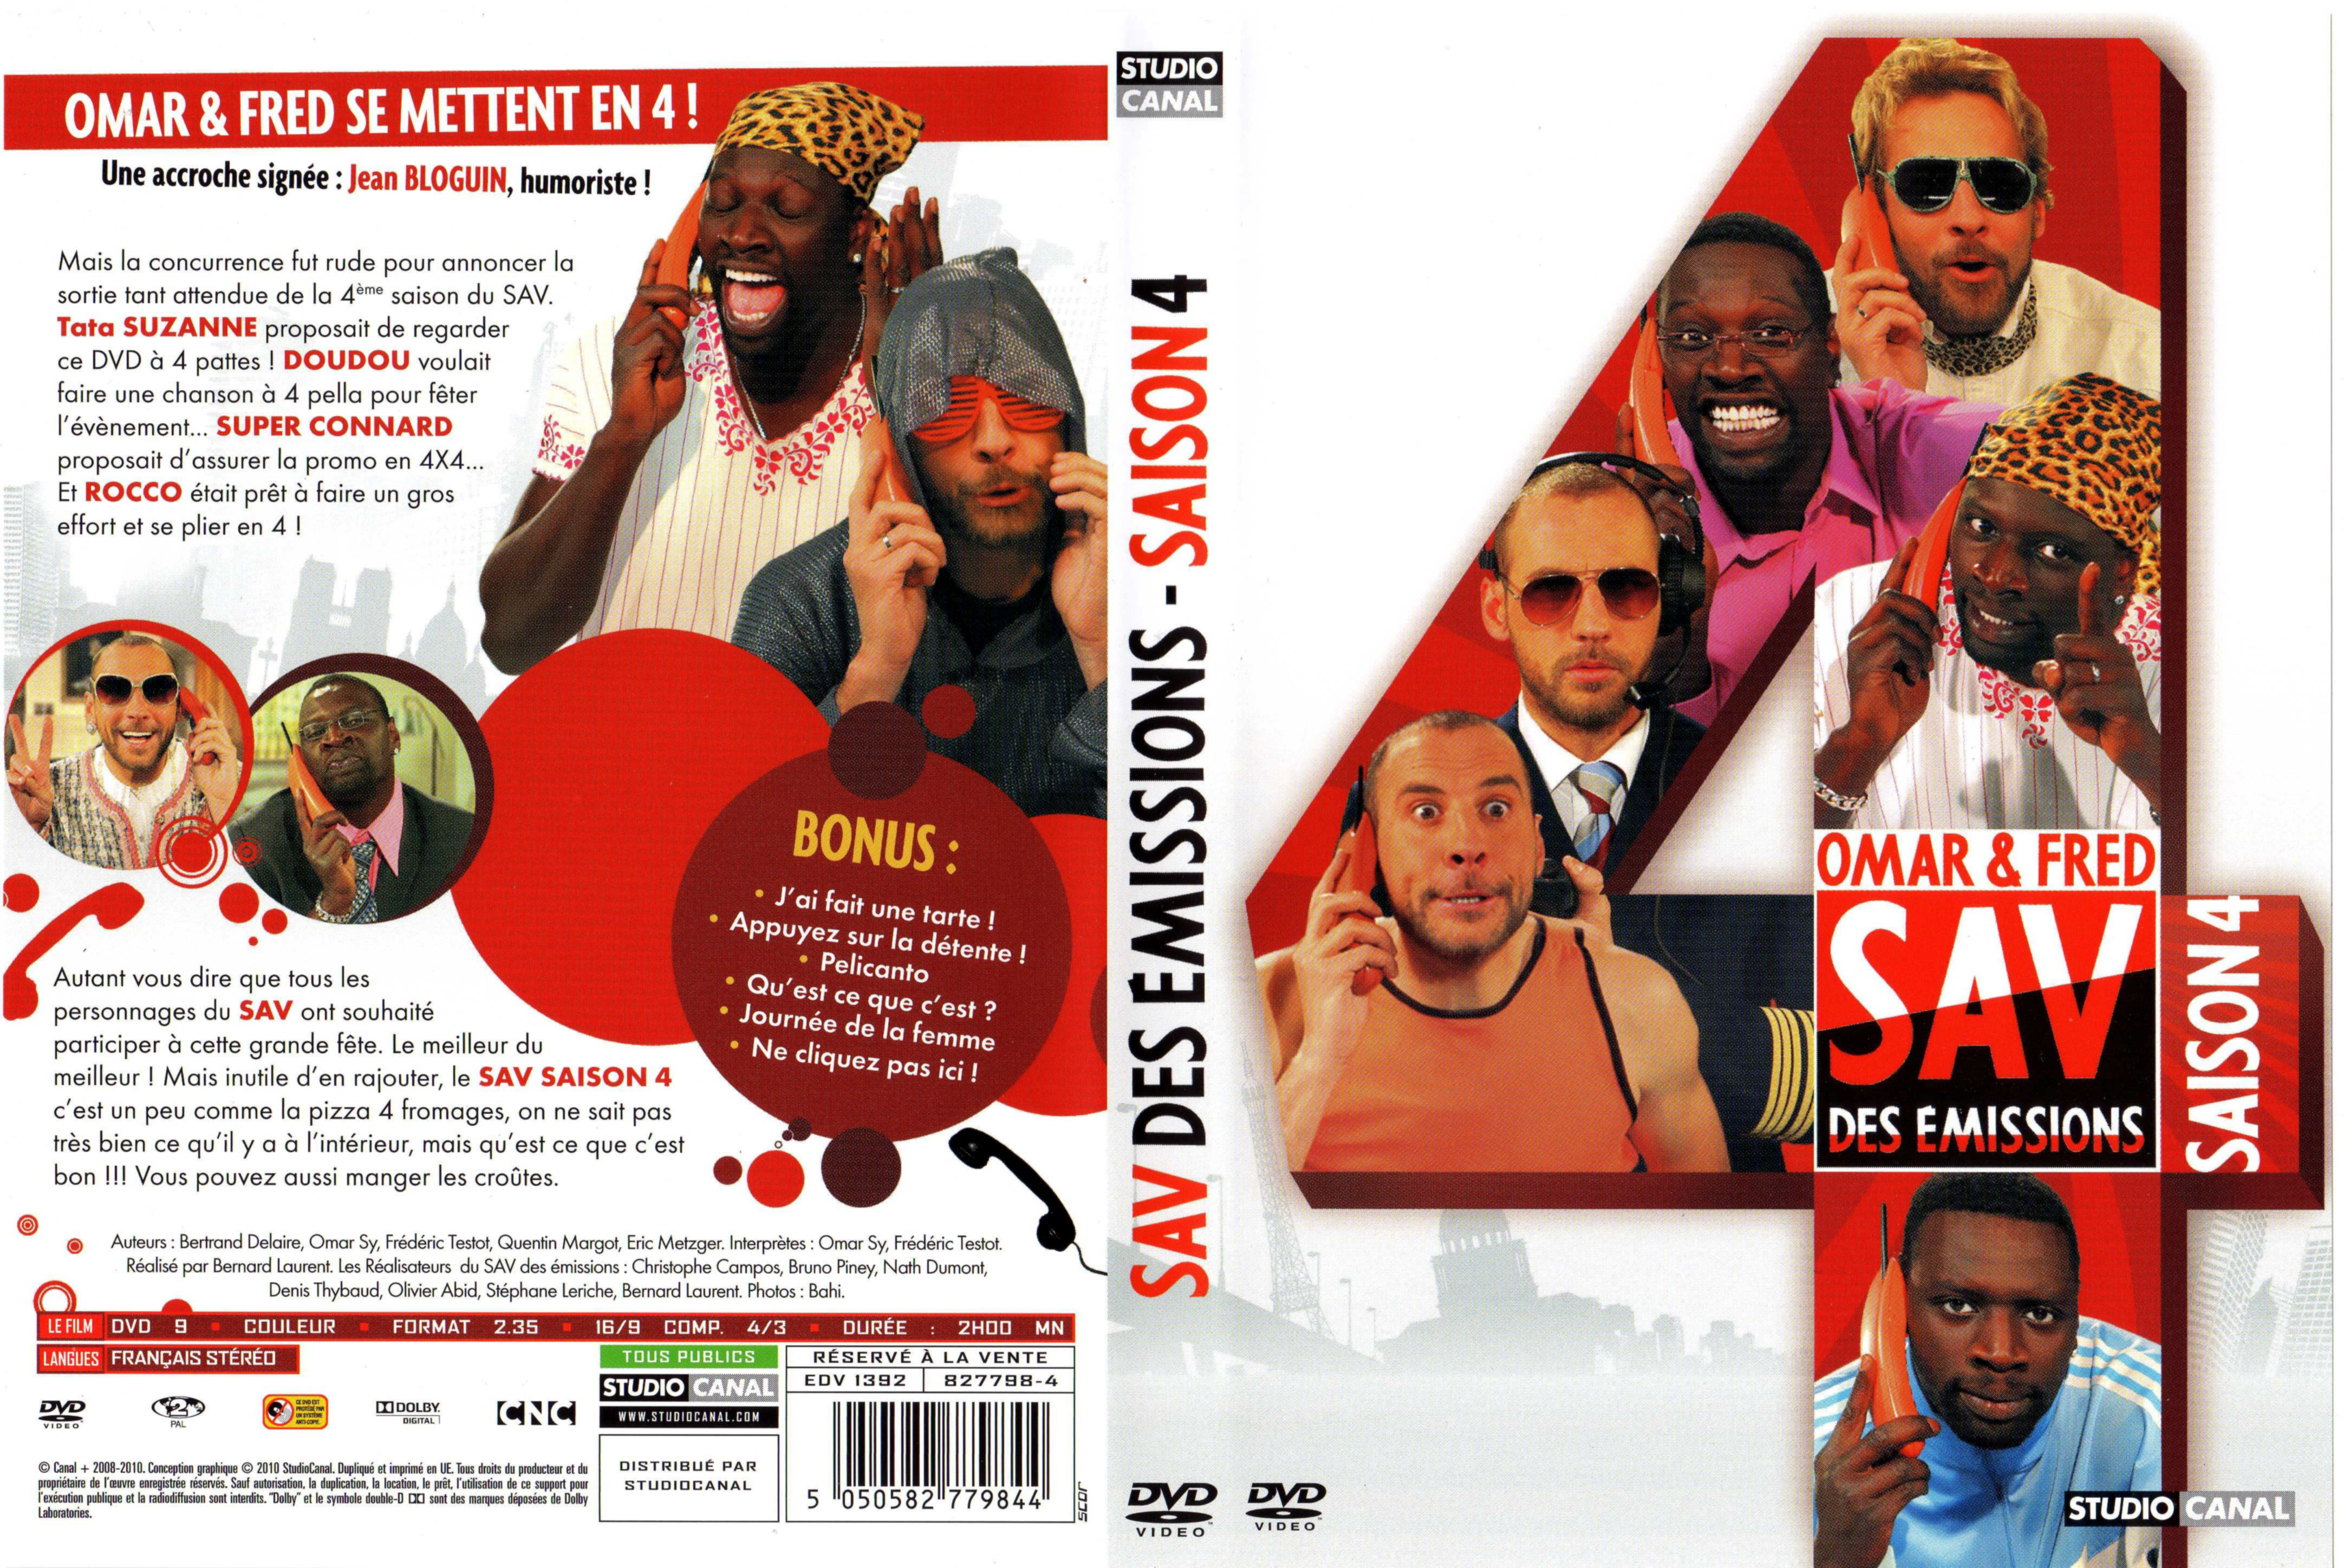 Jaquette DVD SAV des emissions Saison 4